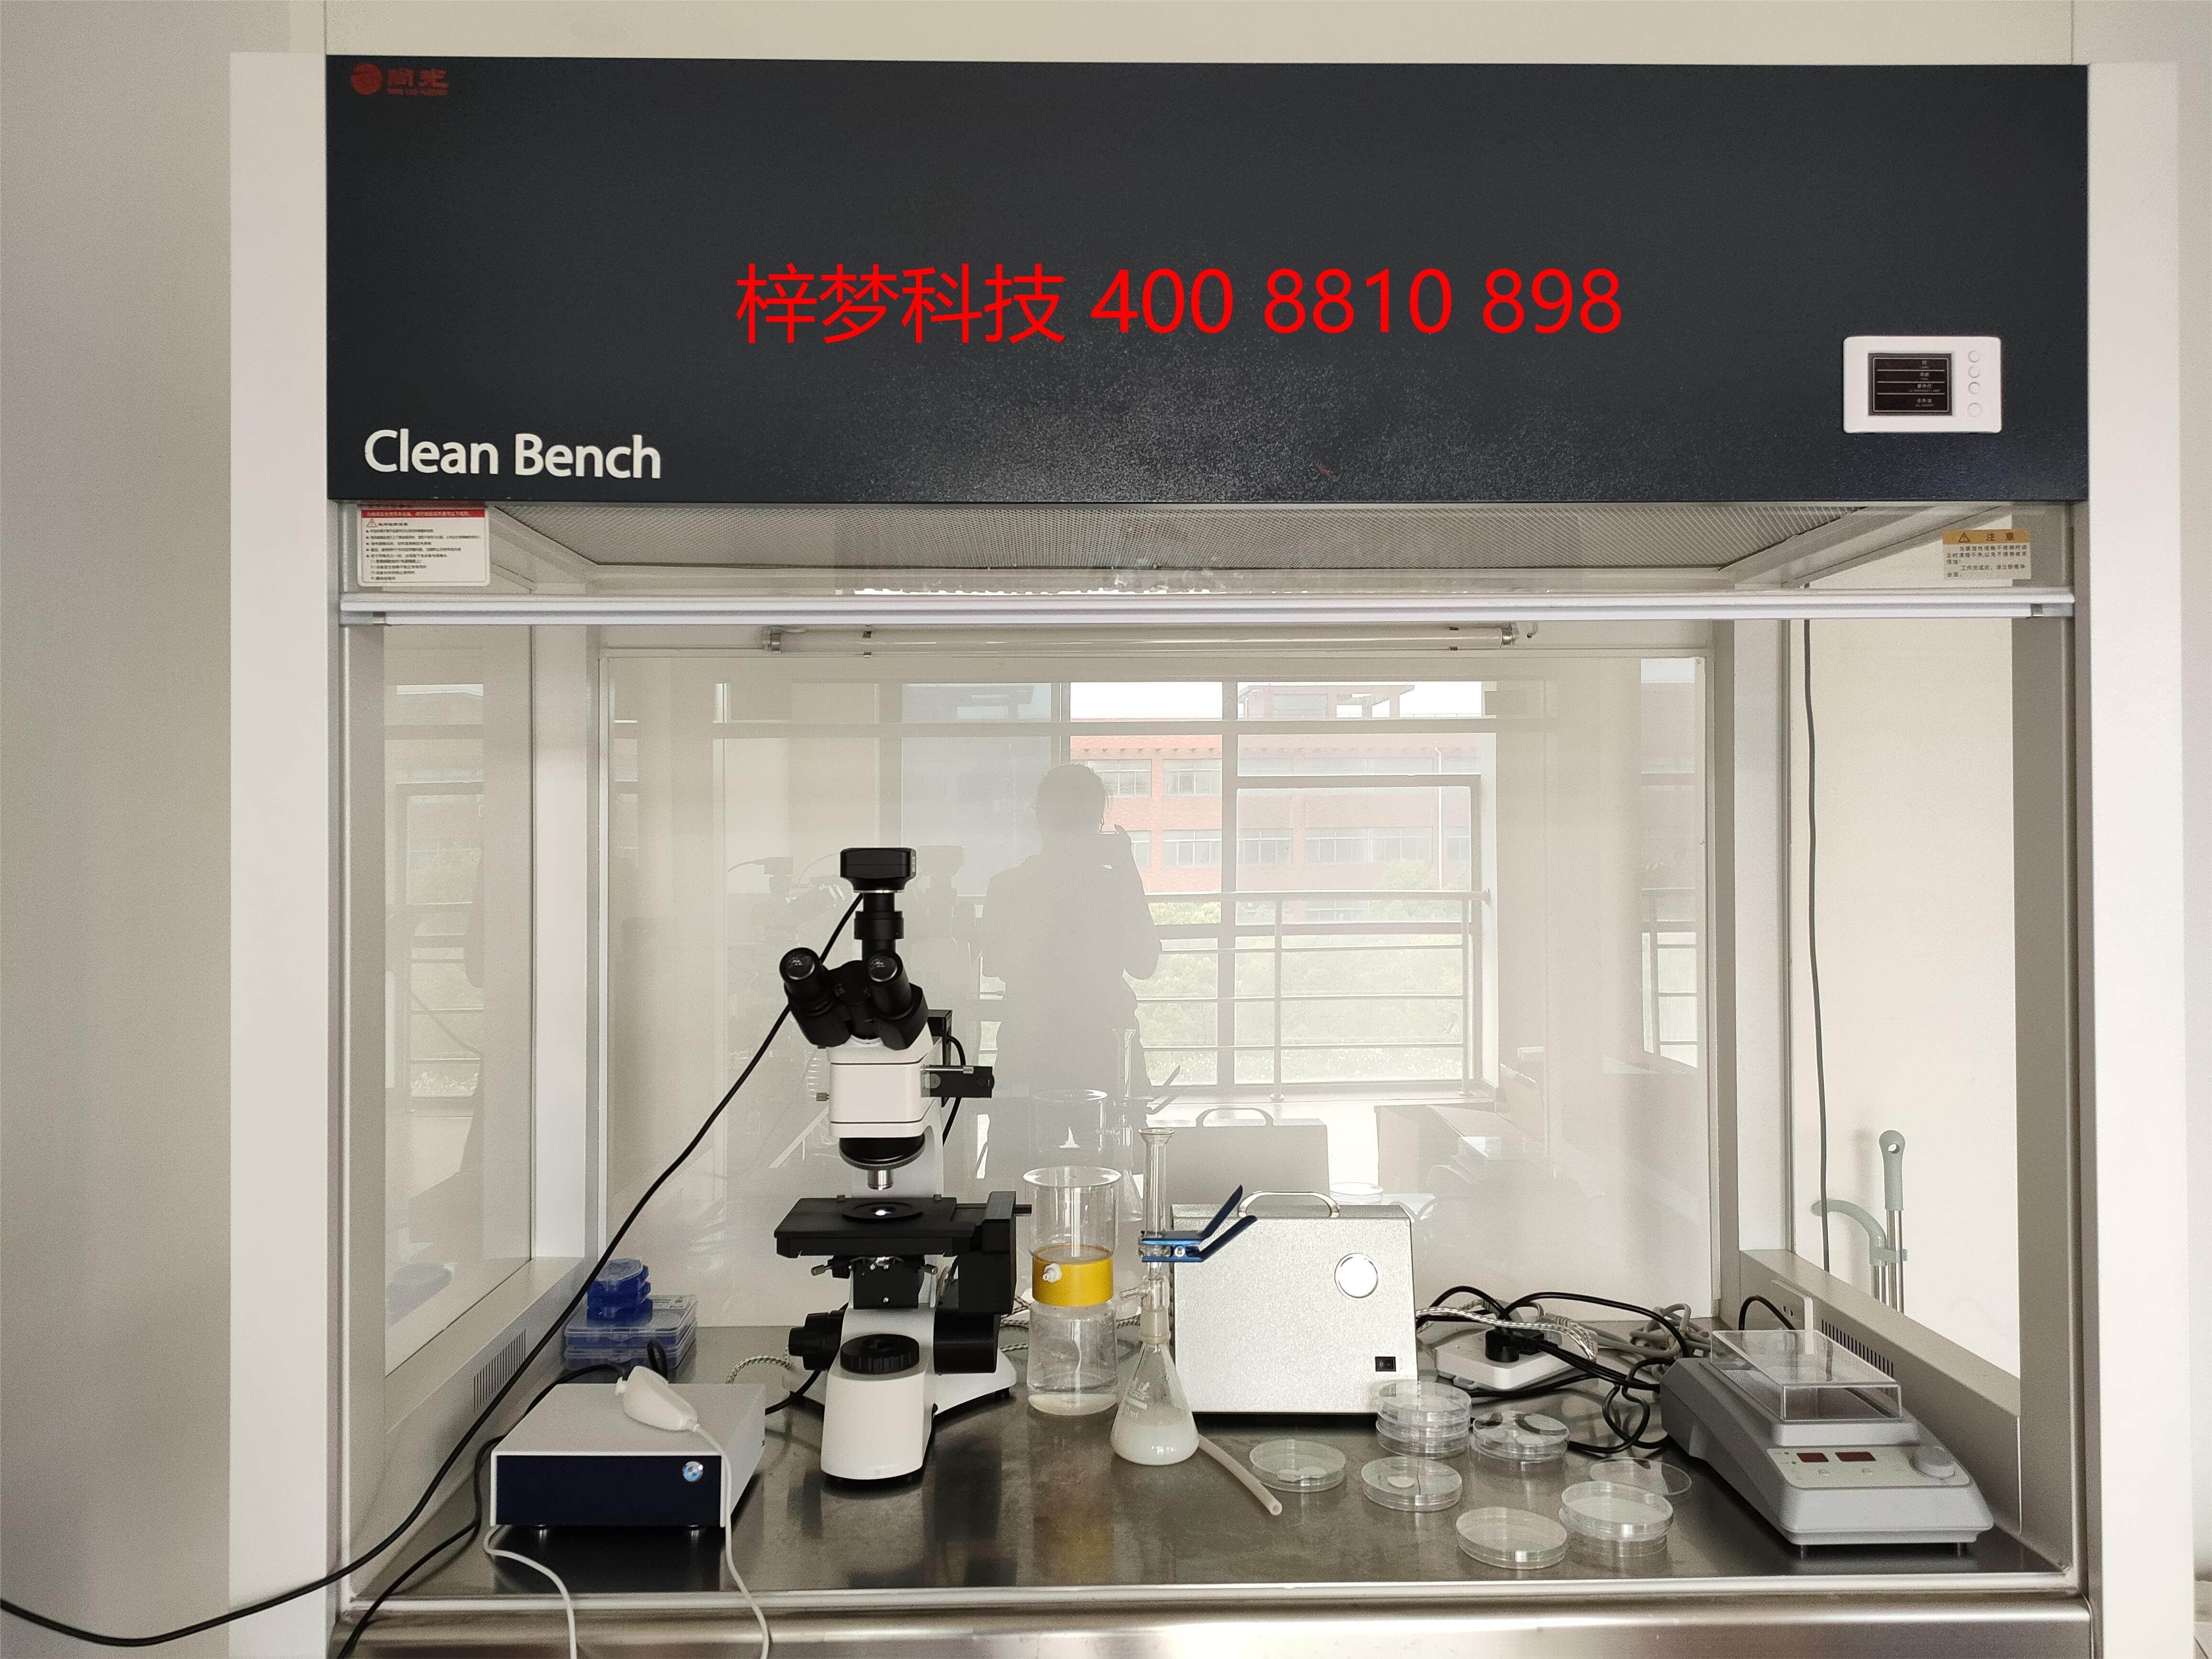 显微镜计数法不溶性微粒分析仪